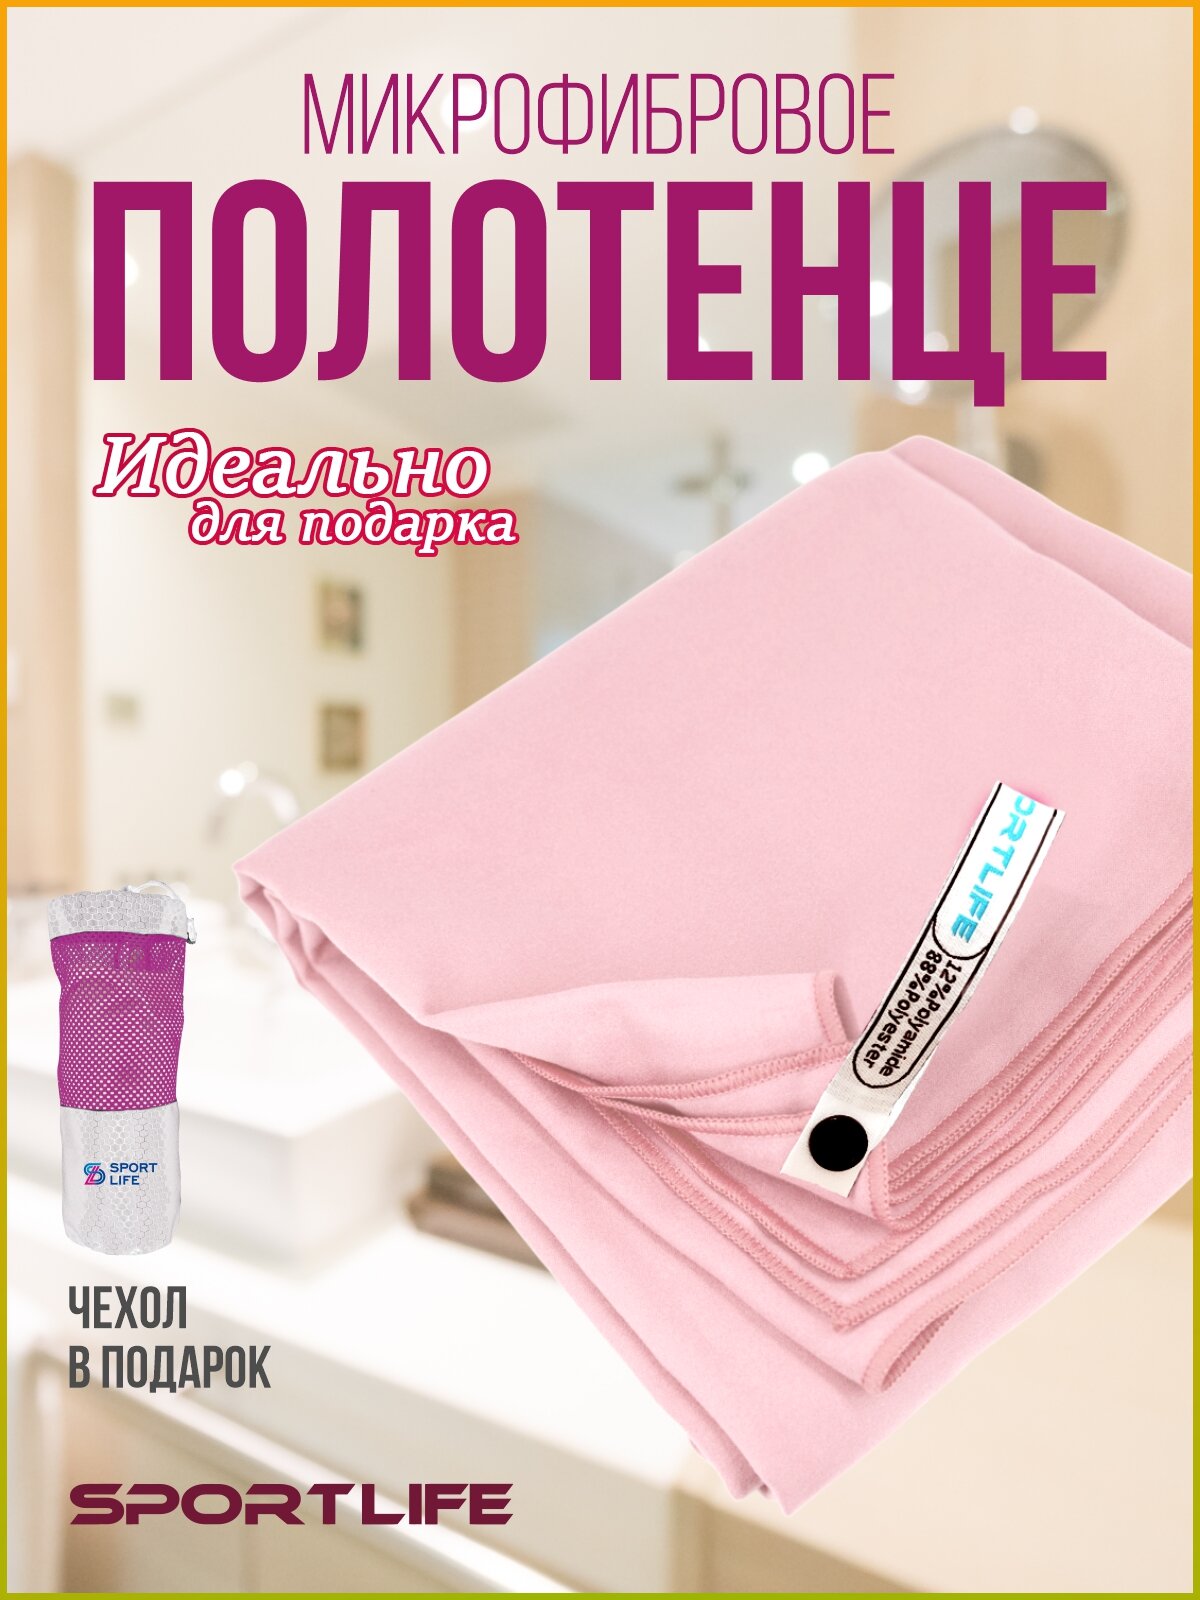 Полотенце спортивное из микрофибры, цвет розовый/ полотенце микрофибра / пляжное полотенце 80х130 см в упаковке